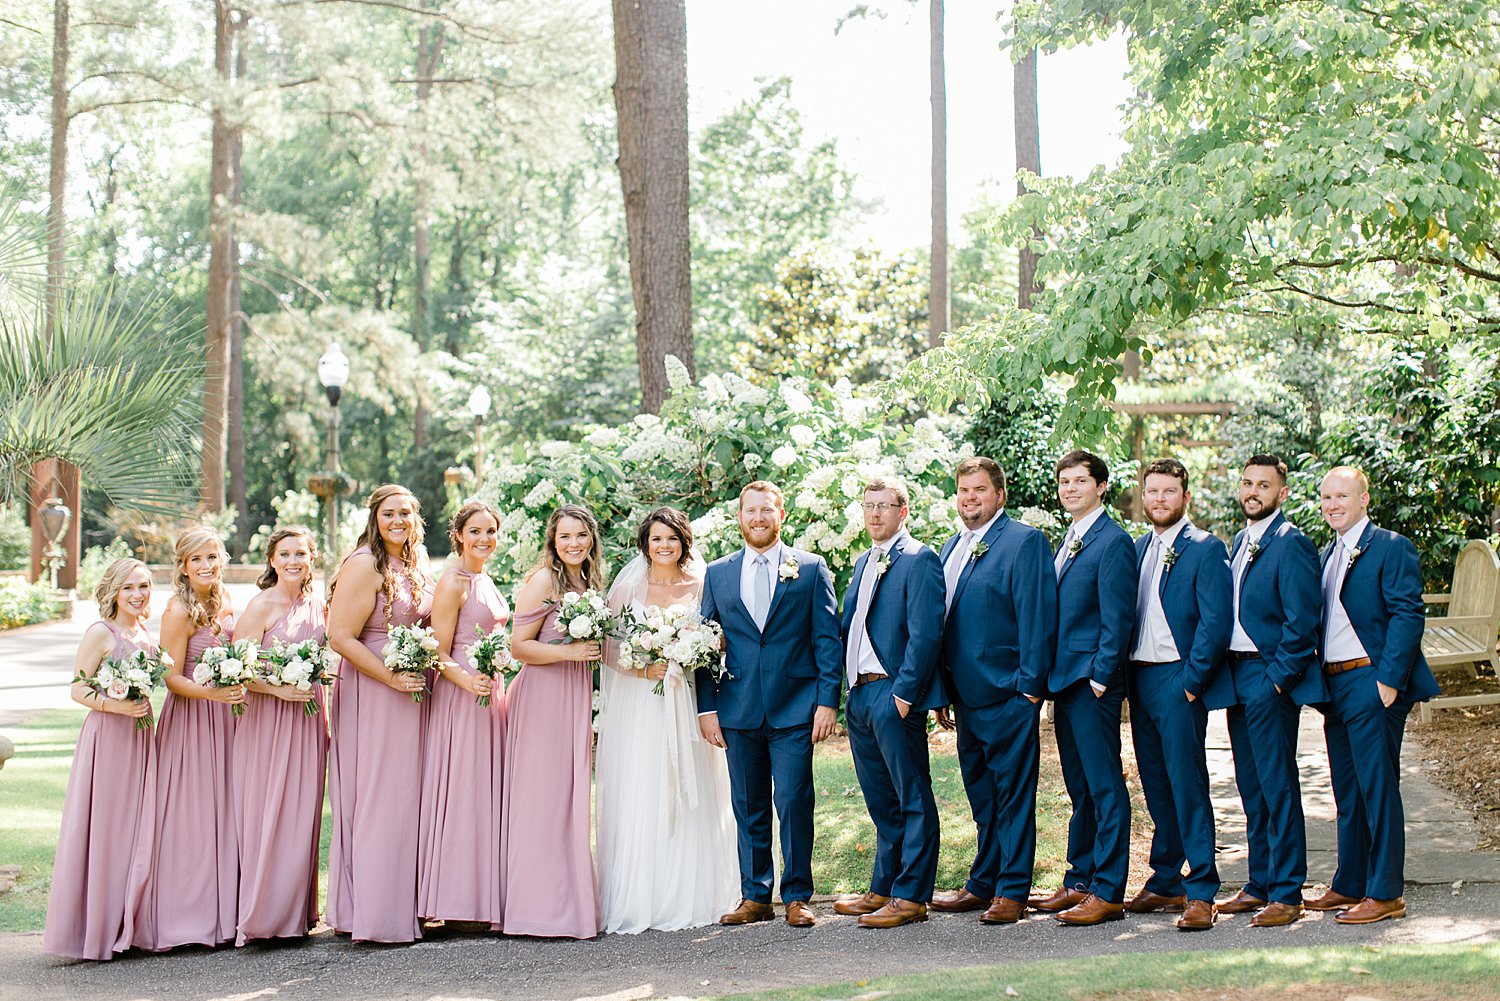 Aldridge Gardens Wedding Day Hoover Alabama | Birmingham Alabama Wedding Photographers_0017.jpg